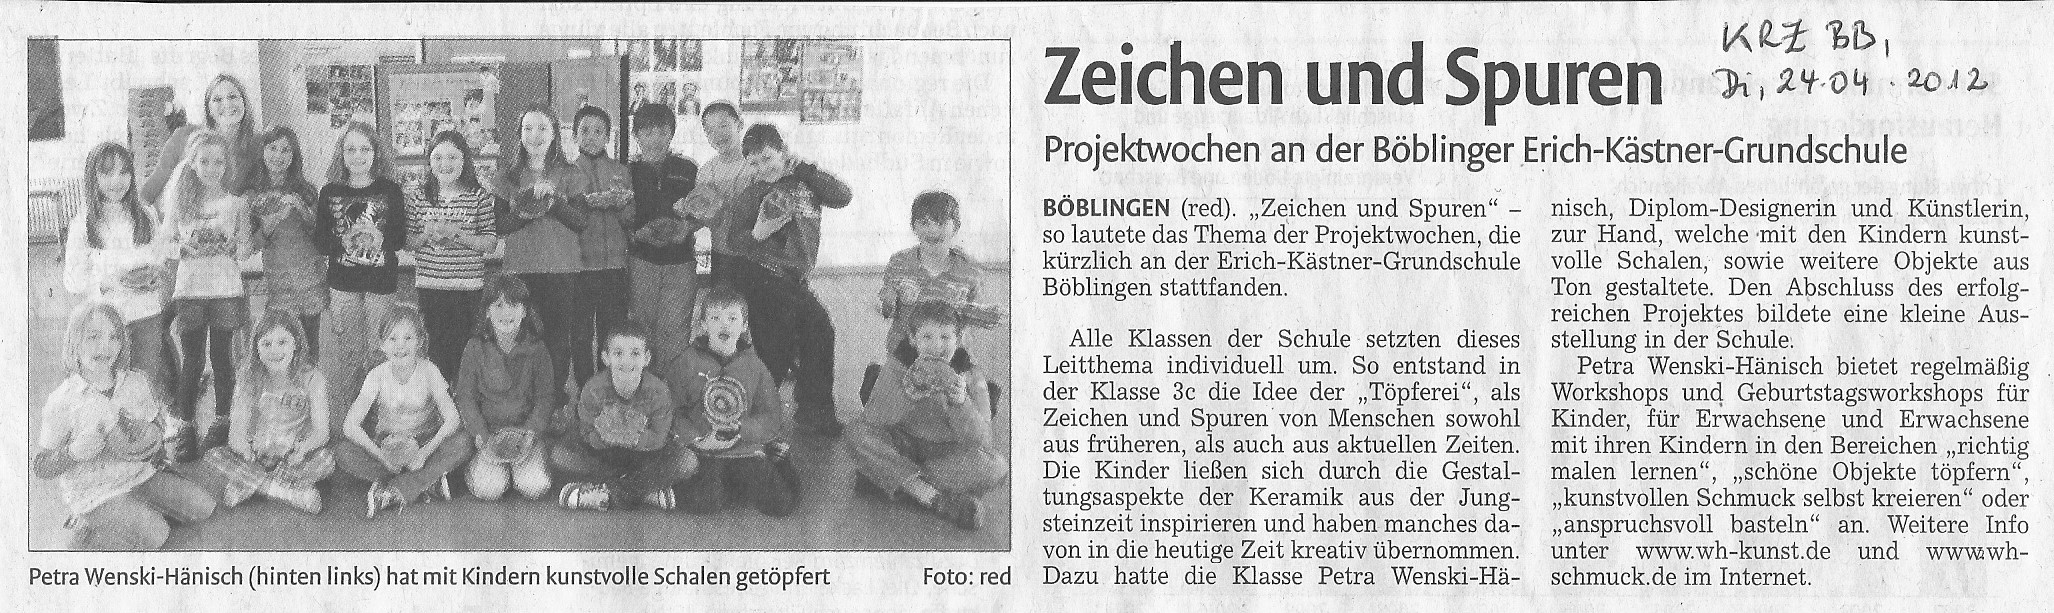 Artikel in der Kreiszeitung Böblingen einem Kunst-Projekt in der Erich-Kästner Schule in Böblingen im Jahr 2012.